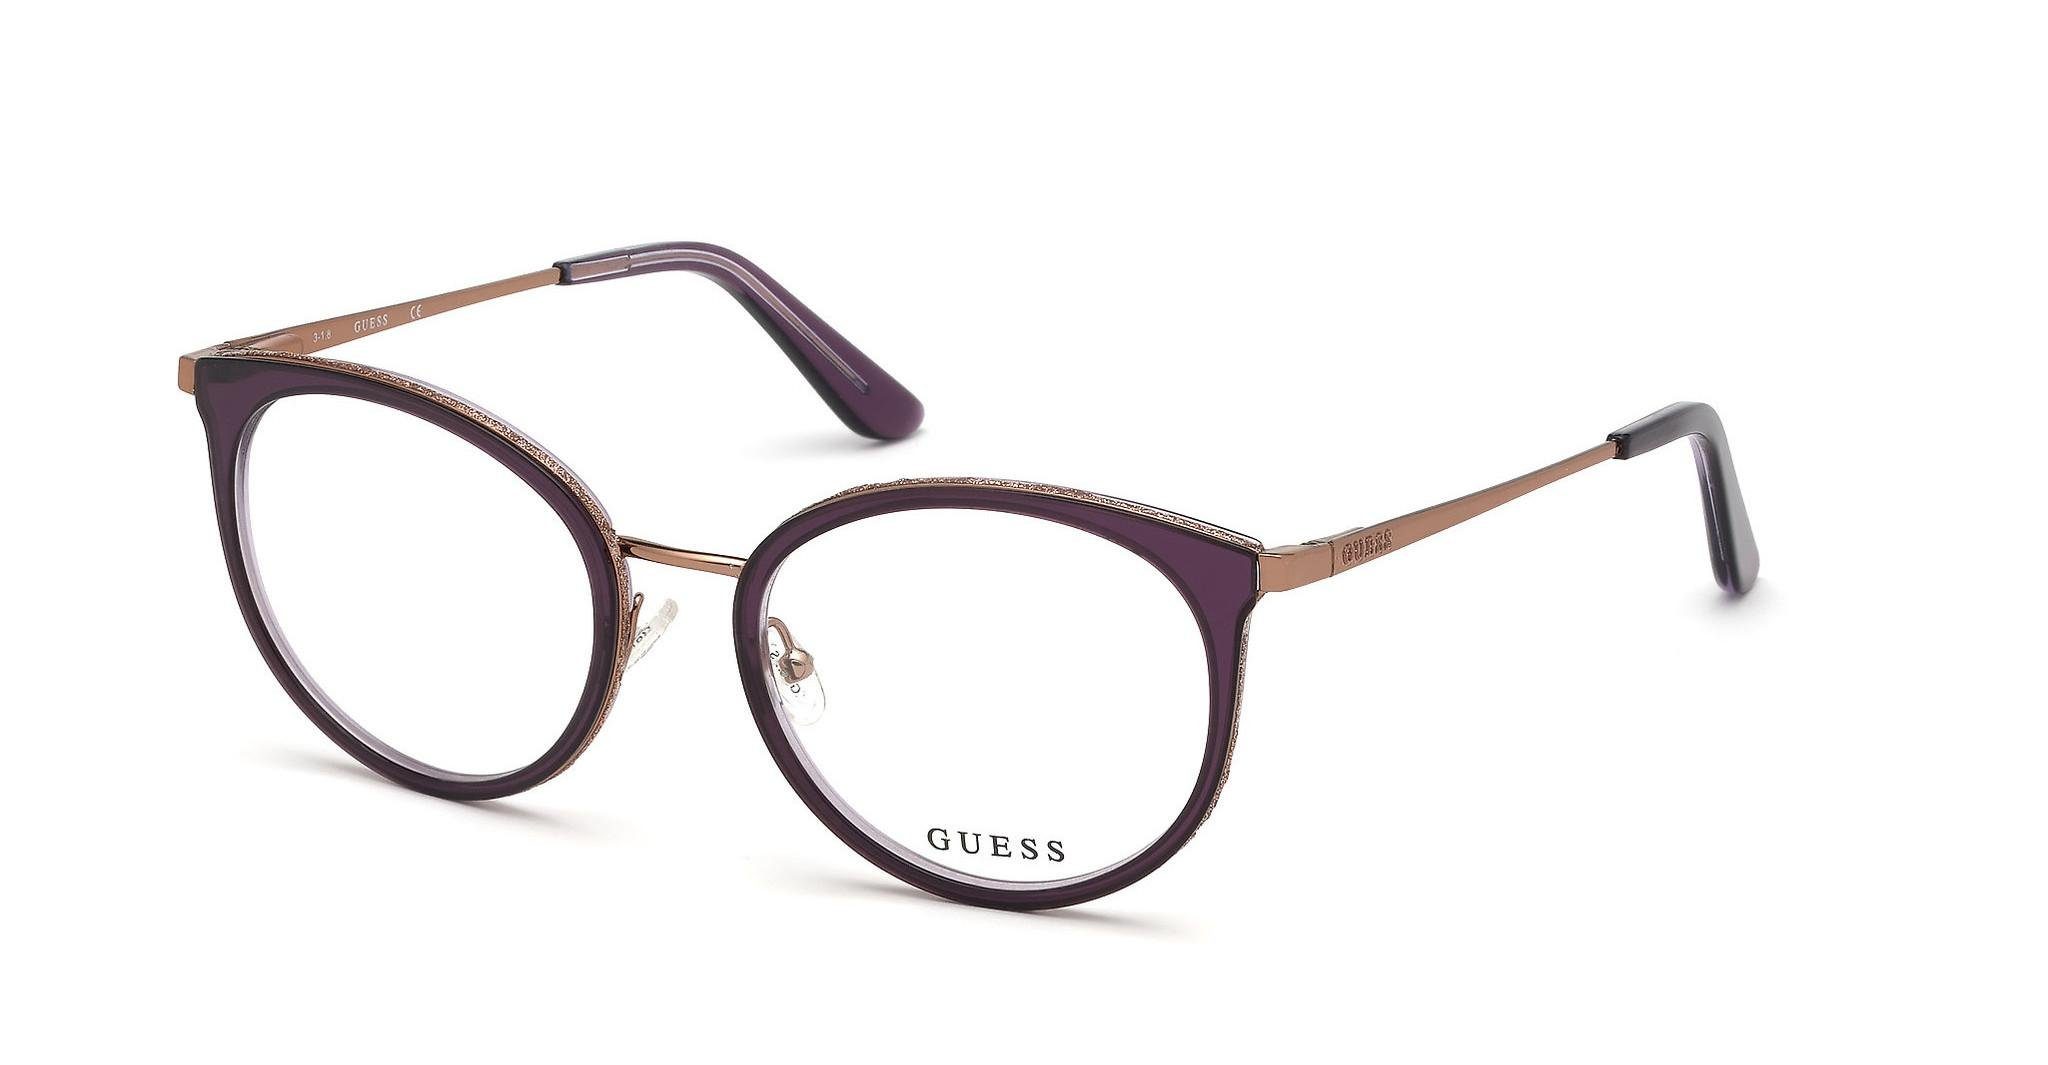 Guess Brille »GU2707« online kaufen | OTTO